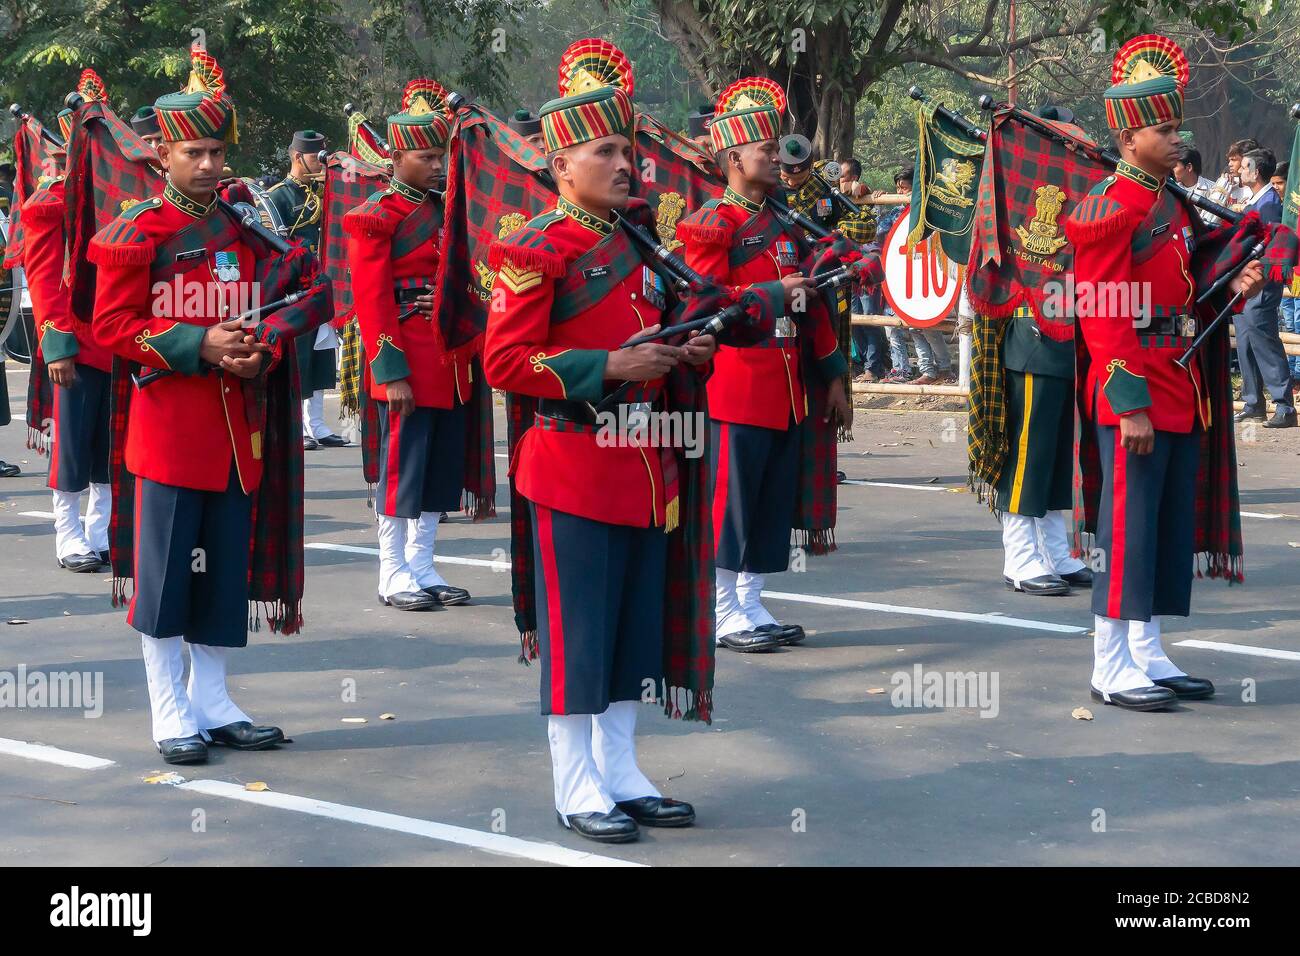 Kolkata, Bengale-Occidental, Inde - 26 janvier 2020 : des officiers de l'armée indienne vêtus d'un groupe musical, portant des instruments de musique, sont en marche par le passé. Banque D'Images